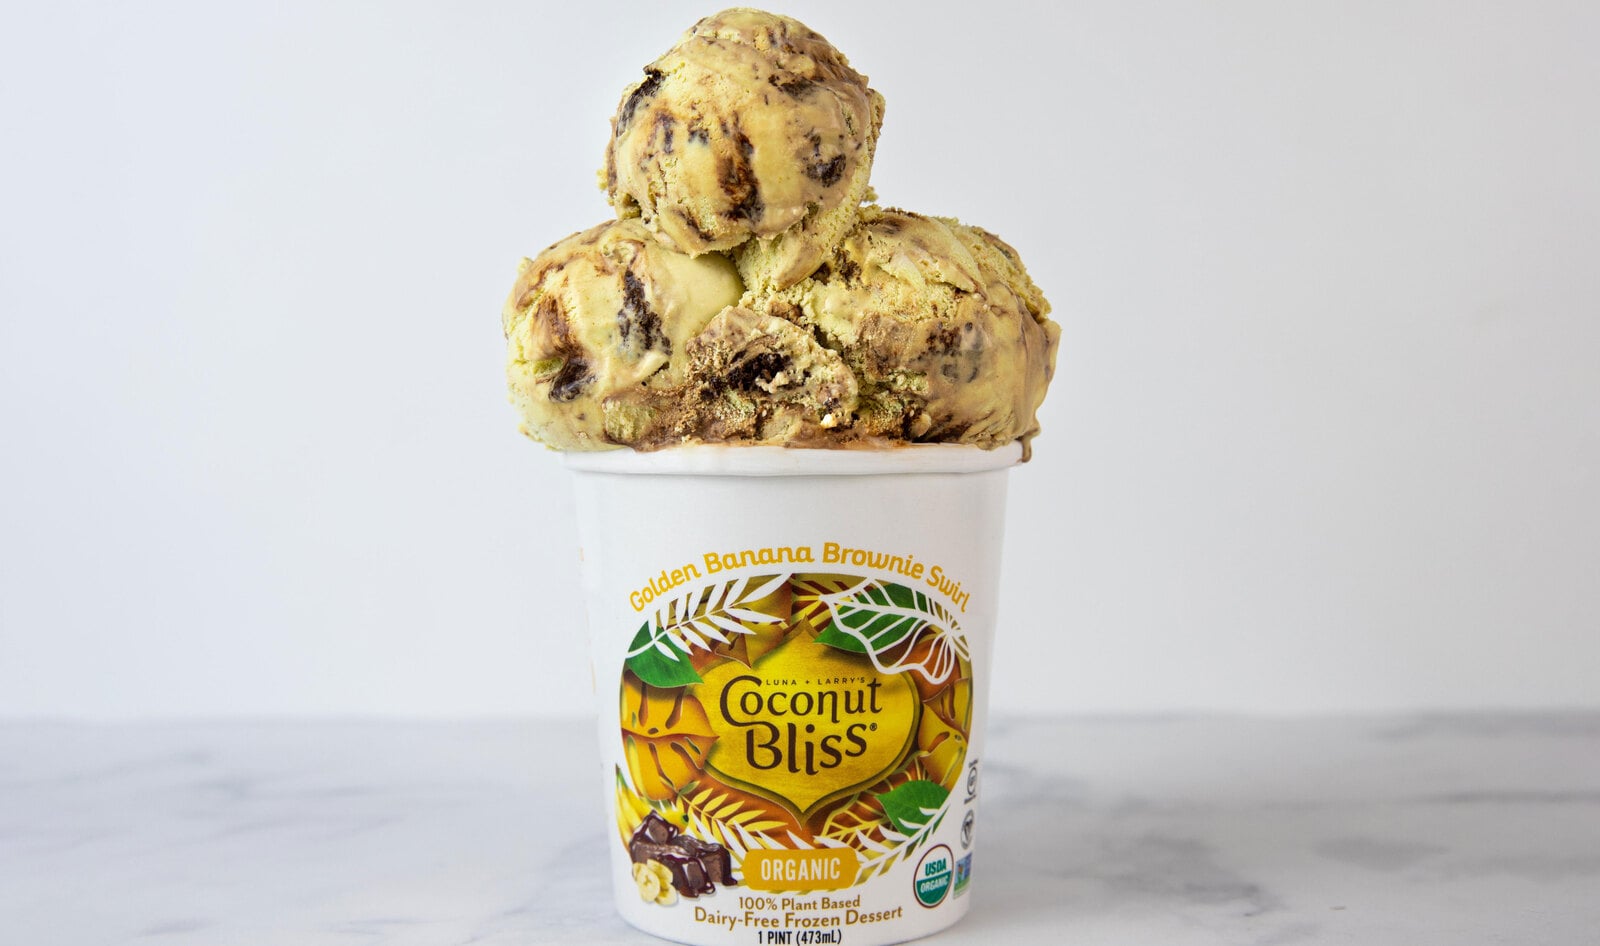 Coconut Bliss Releases Indulgent Vegan Ice Cream Flavor: Golden Banana Brownie Swirl